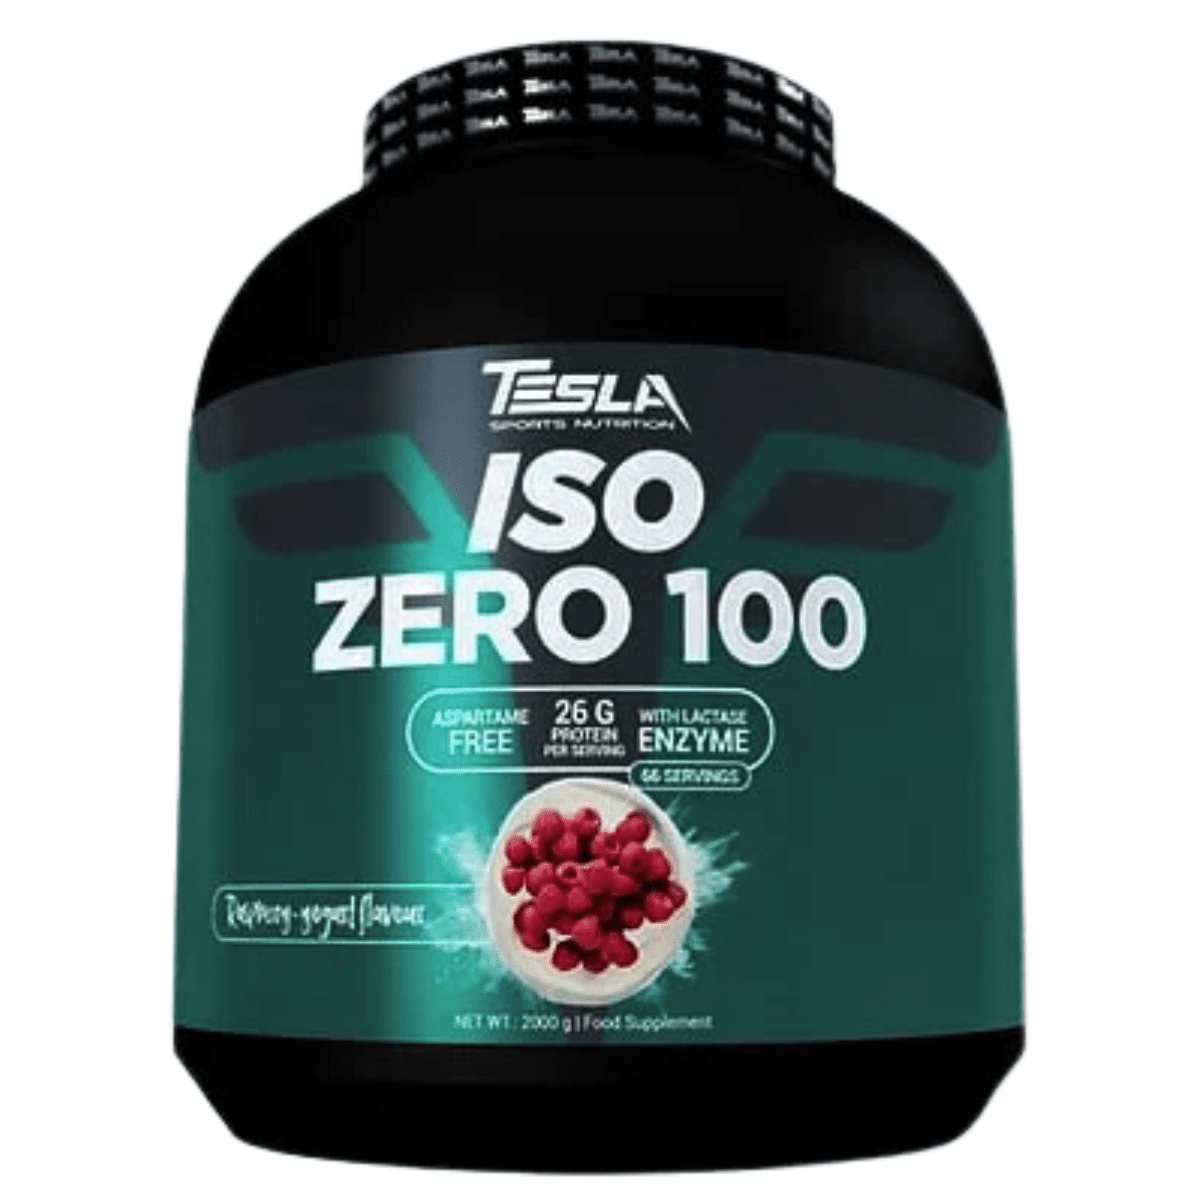 Tesla Iso Zero 100